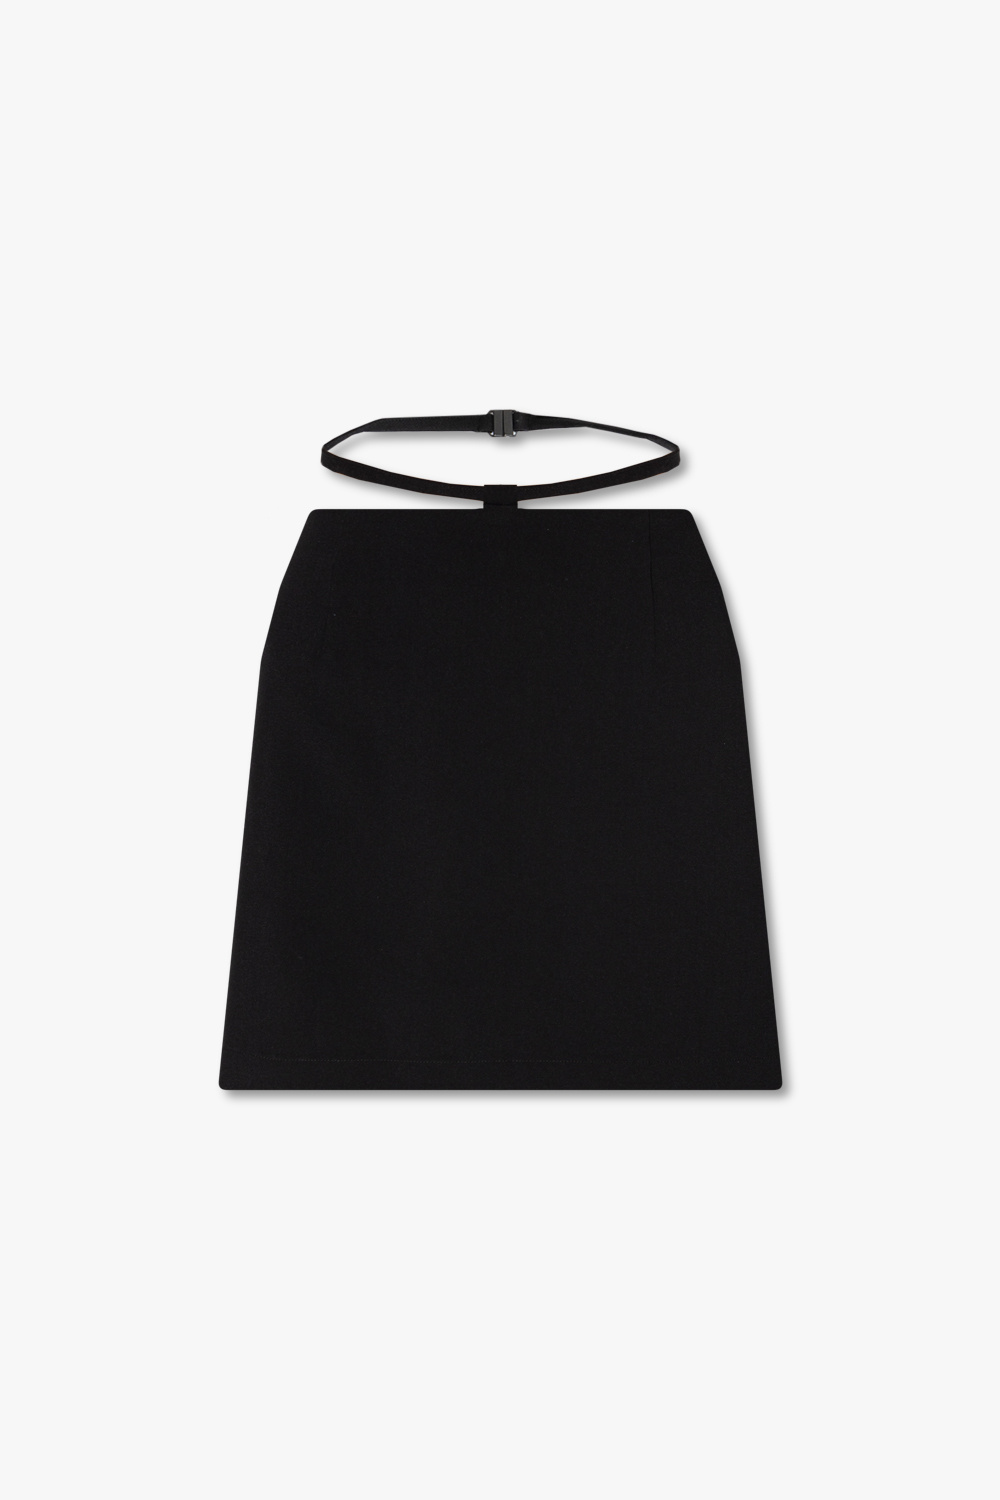 Birgitte Herskind ‘Drew’ mini skirt